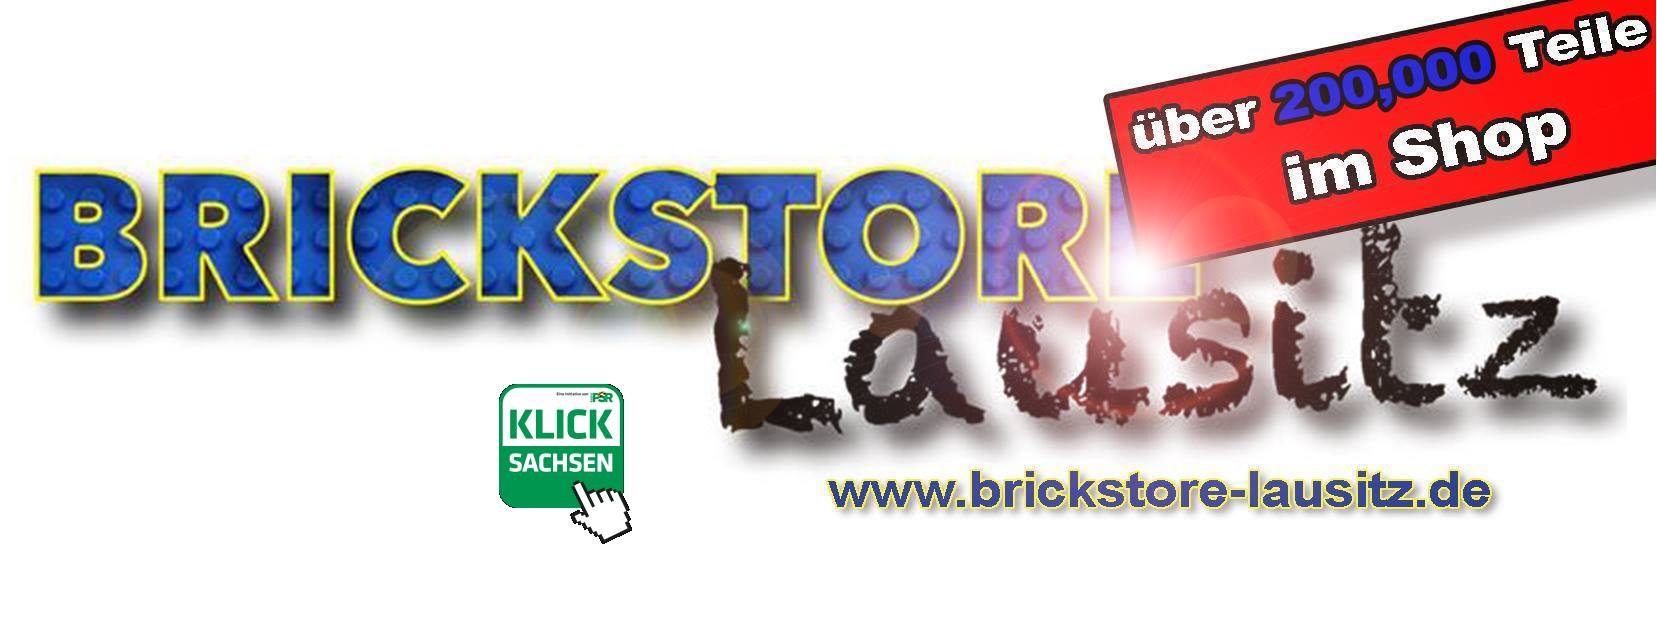 BrickStore-Lausitz